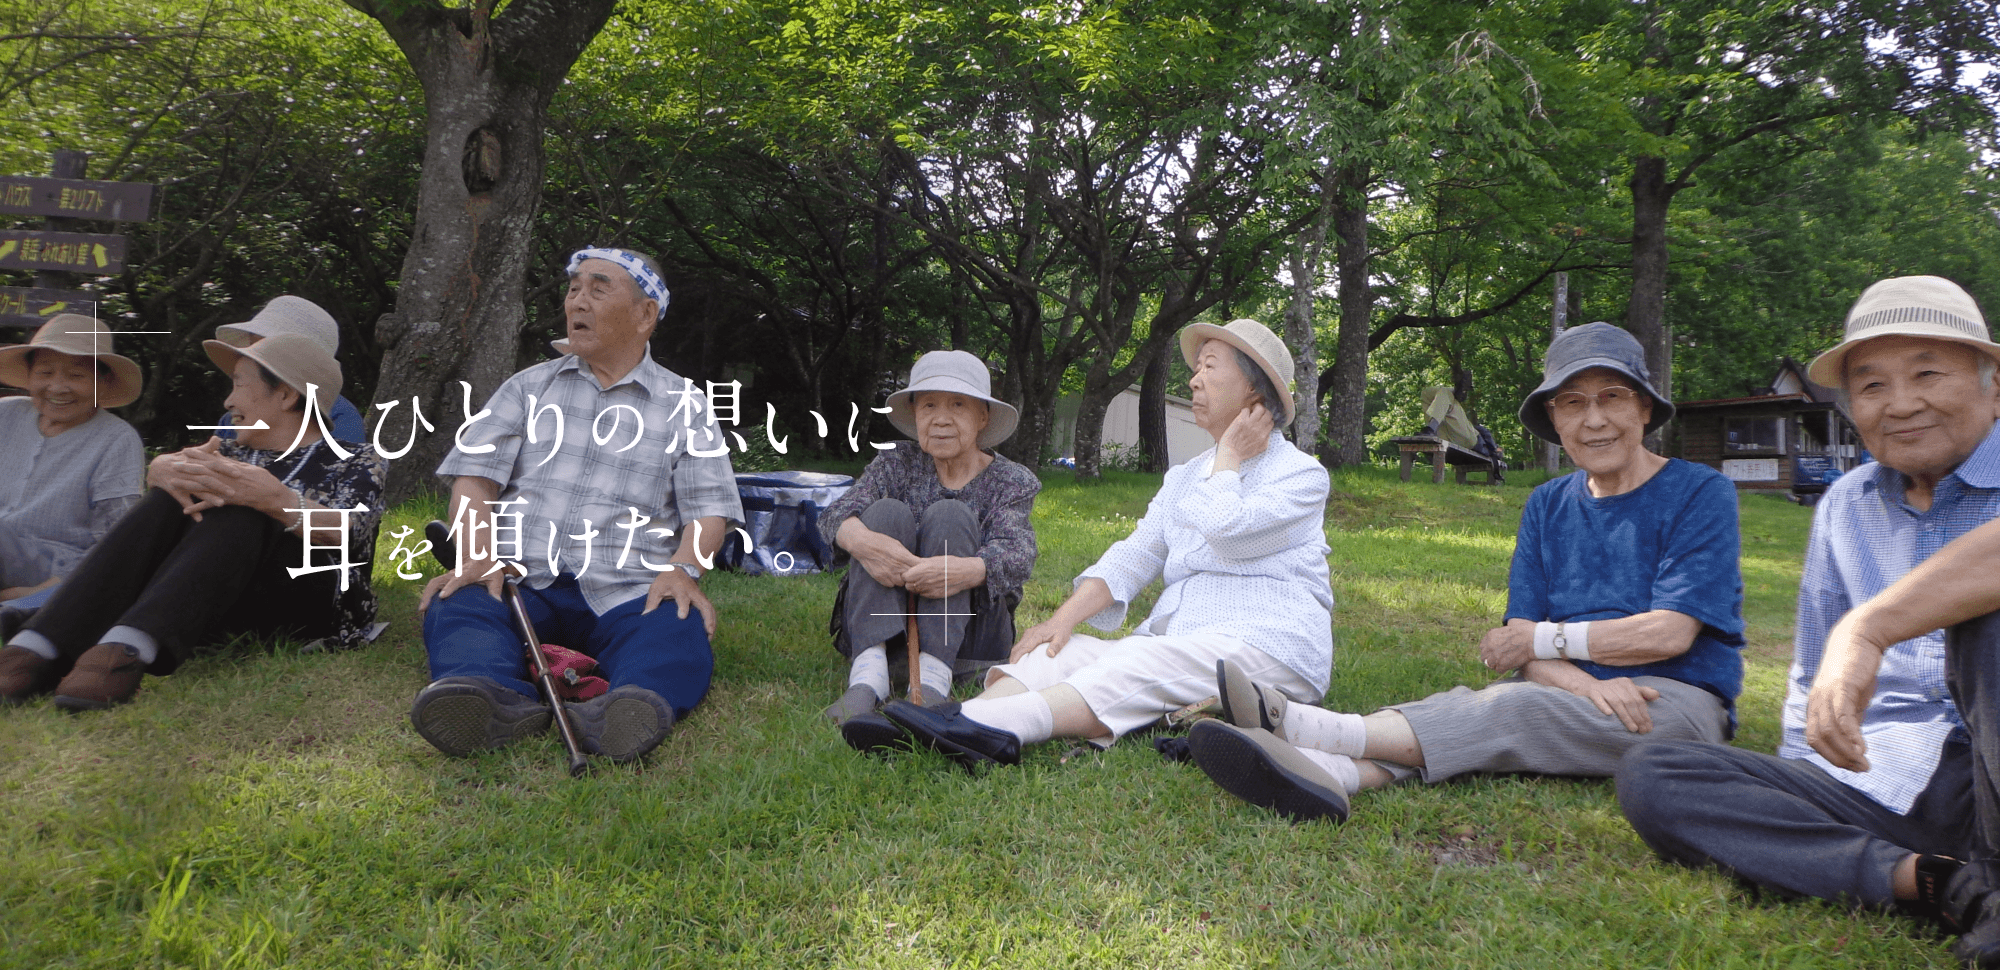 清山会医療福祉グループ 清山会は、理念を大切にしながら、宮城県内に介護施設や診療所を展開する医療福祉グループです。